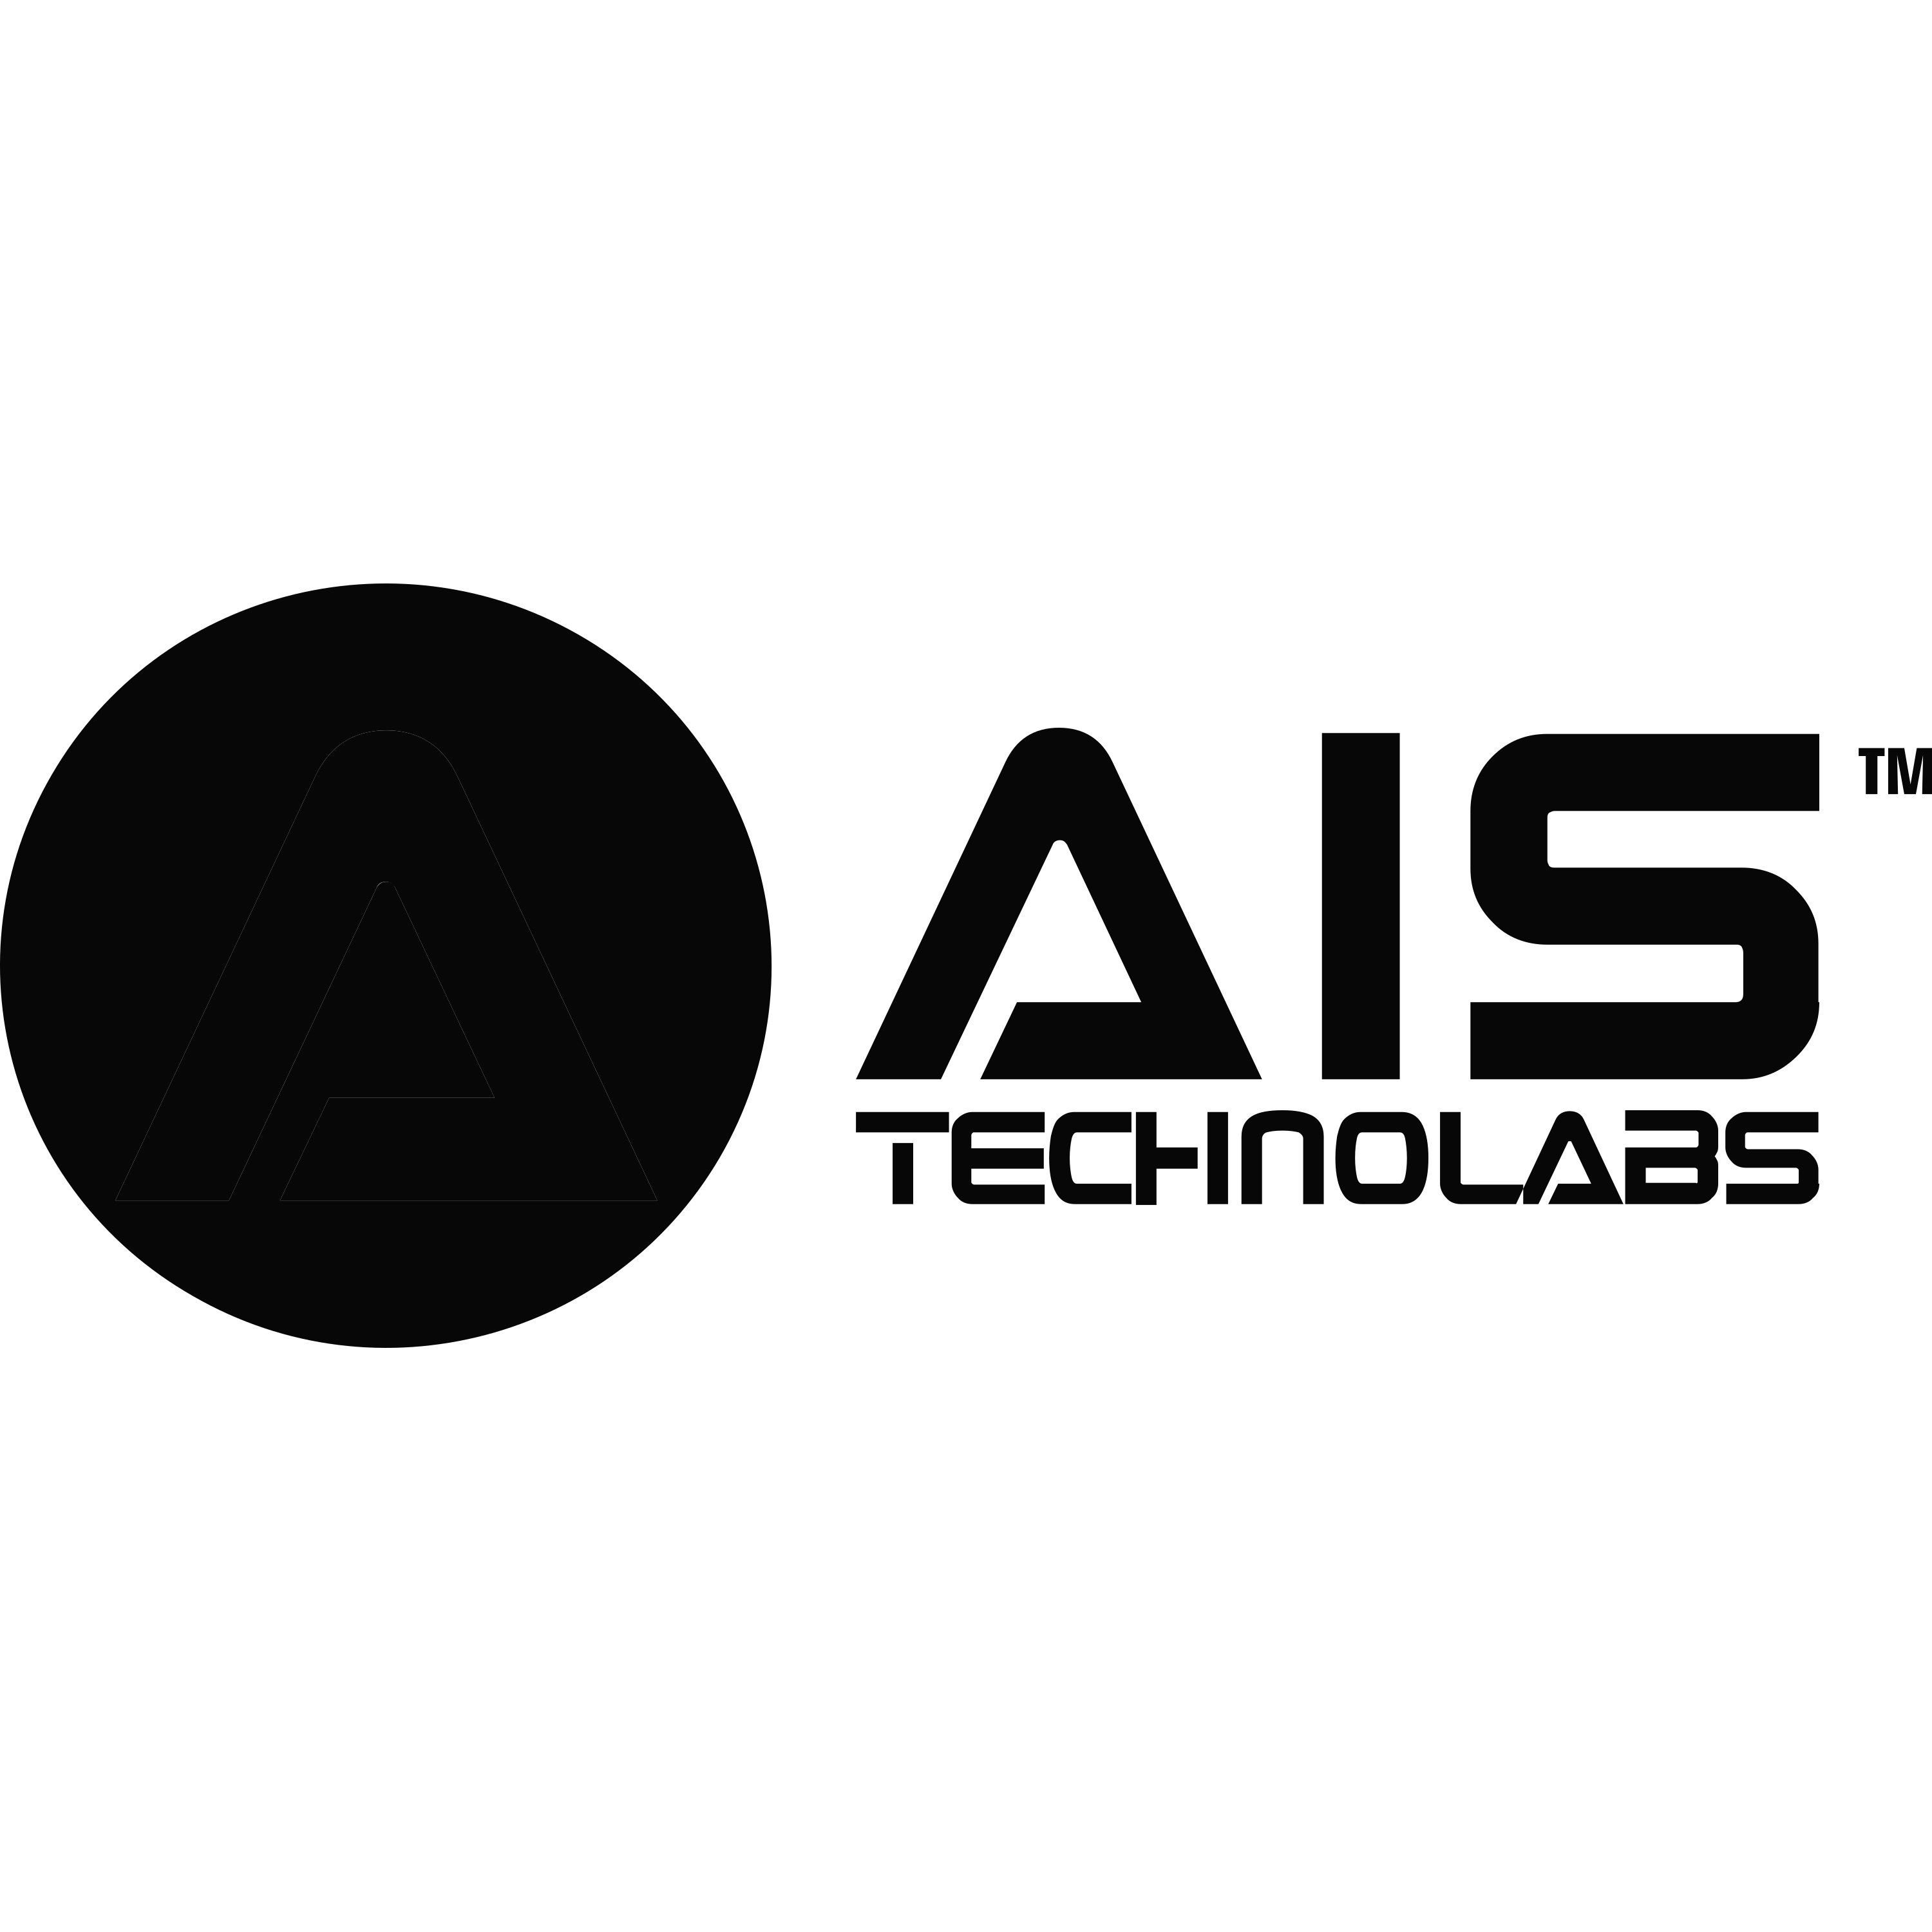 Ais Technolabs Logo Transparent Picture